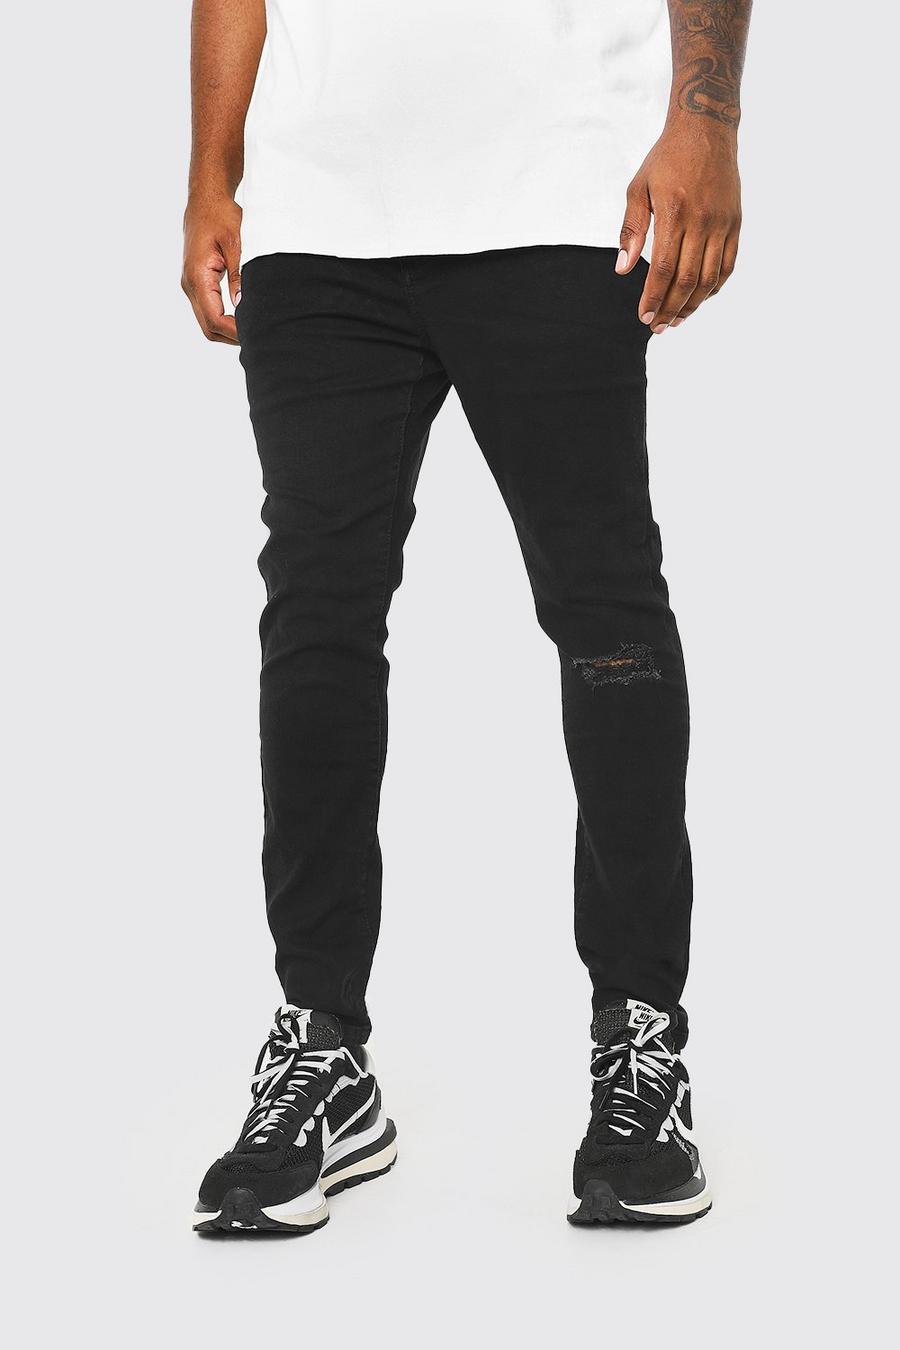 Jeans Plus Size Super Skinny Fit con spacco sul ginocchio, Nero negro